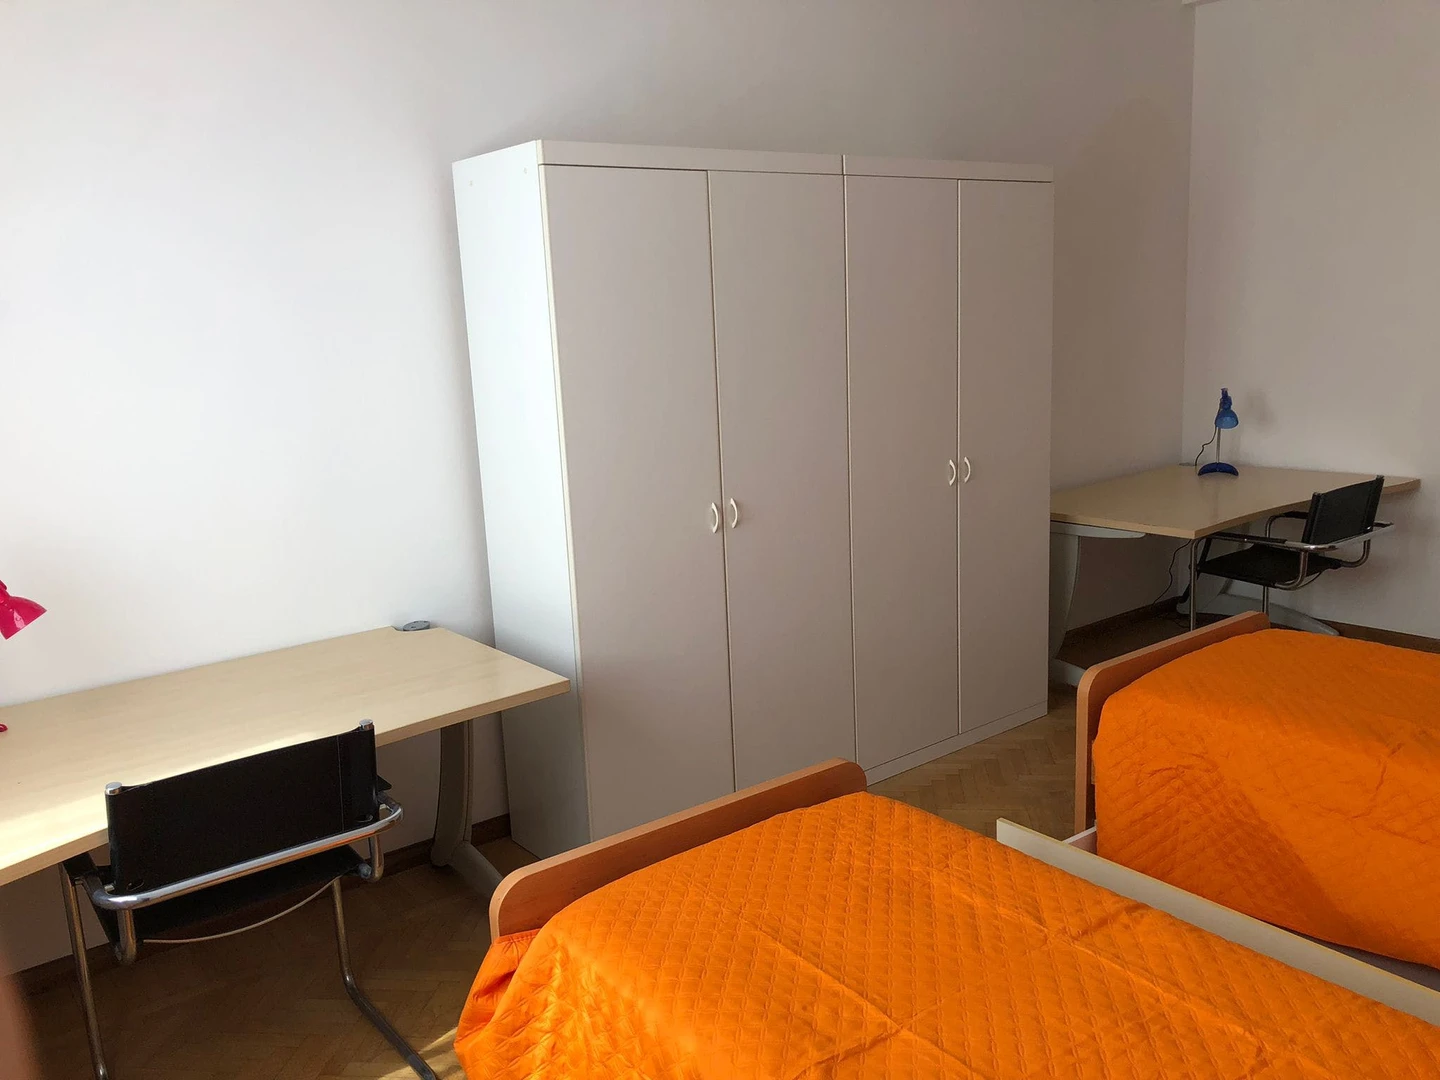 Shared room in 3-bedroom flat Ferrara